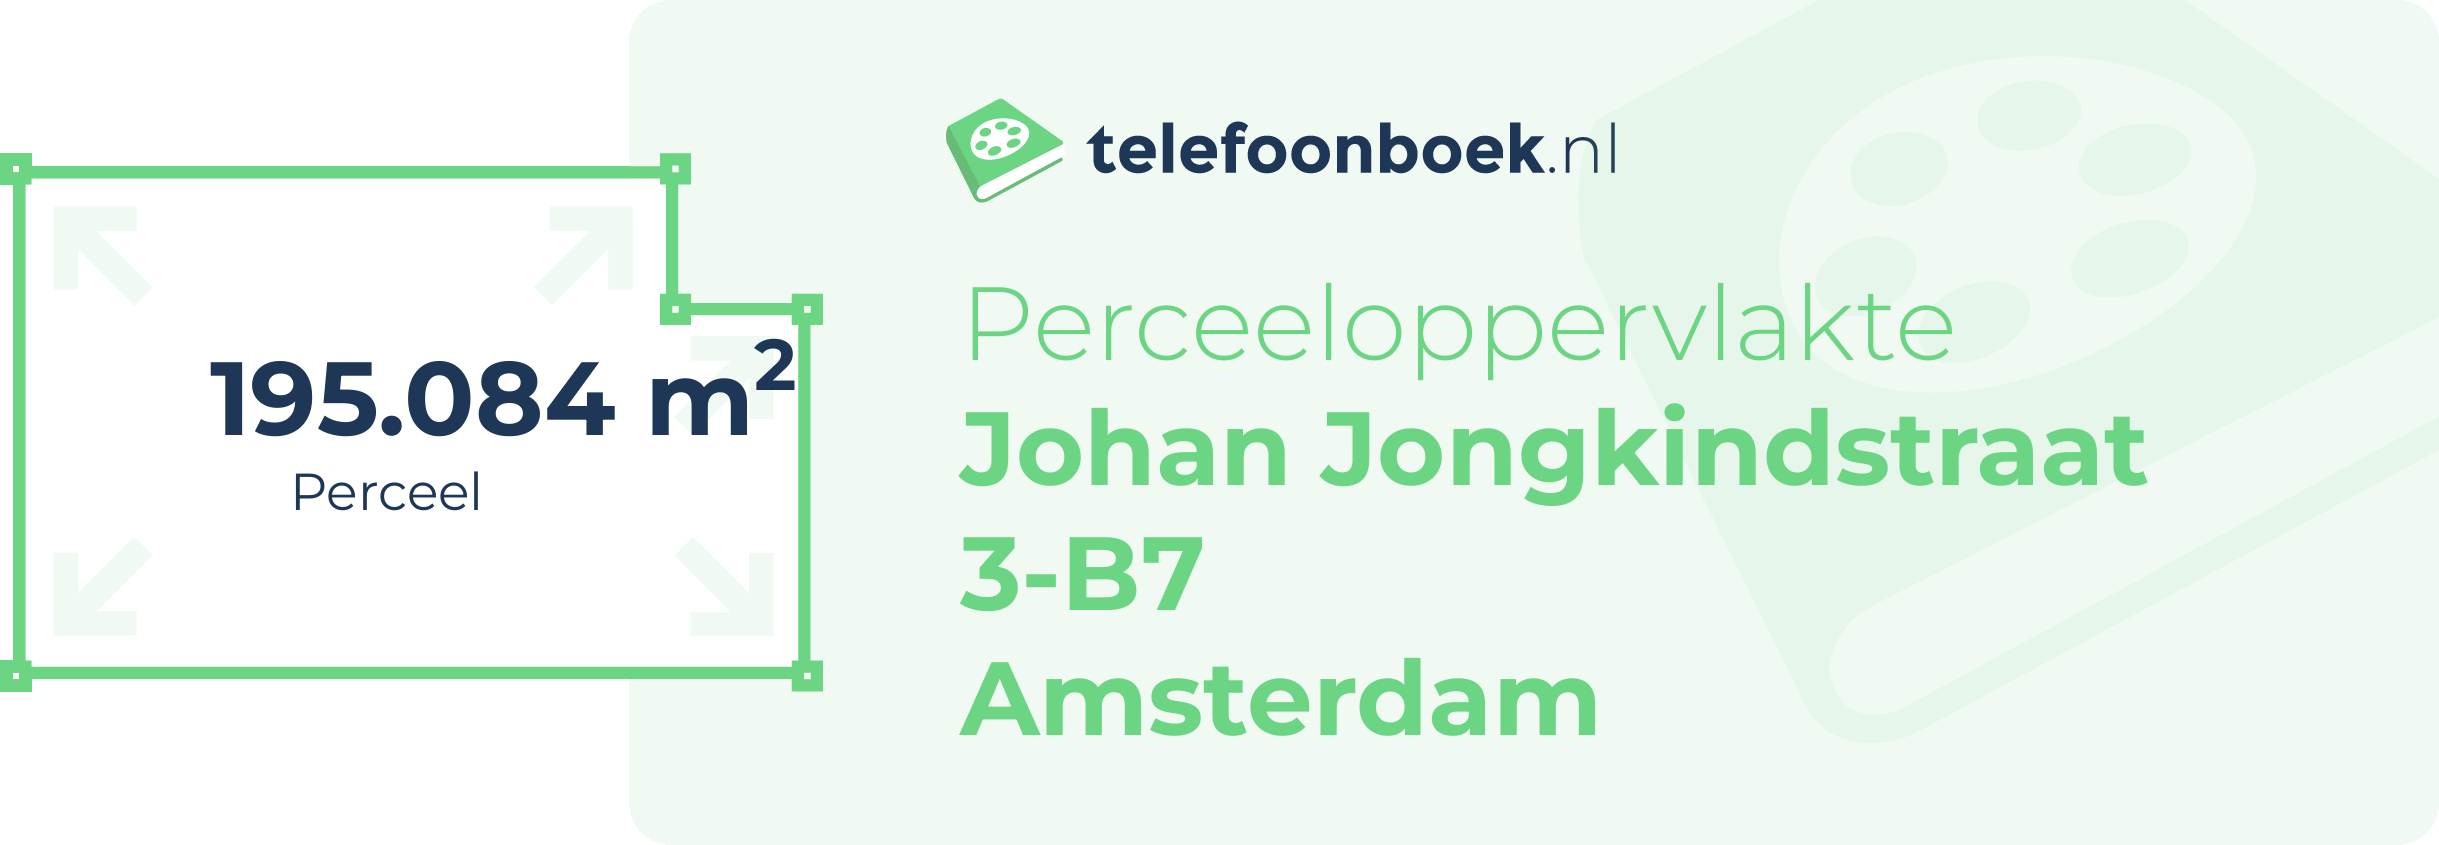 Perceeloppervlakte Johan Jongkindstraat 3-B7 Amsterdam